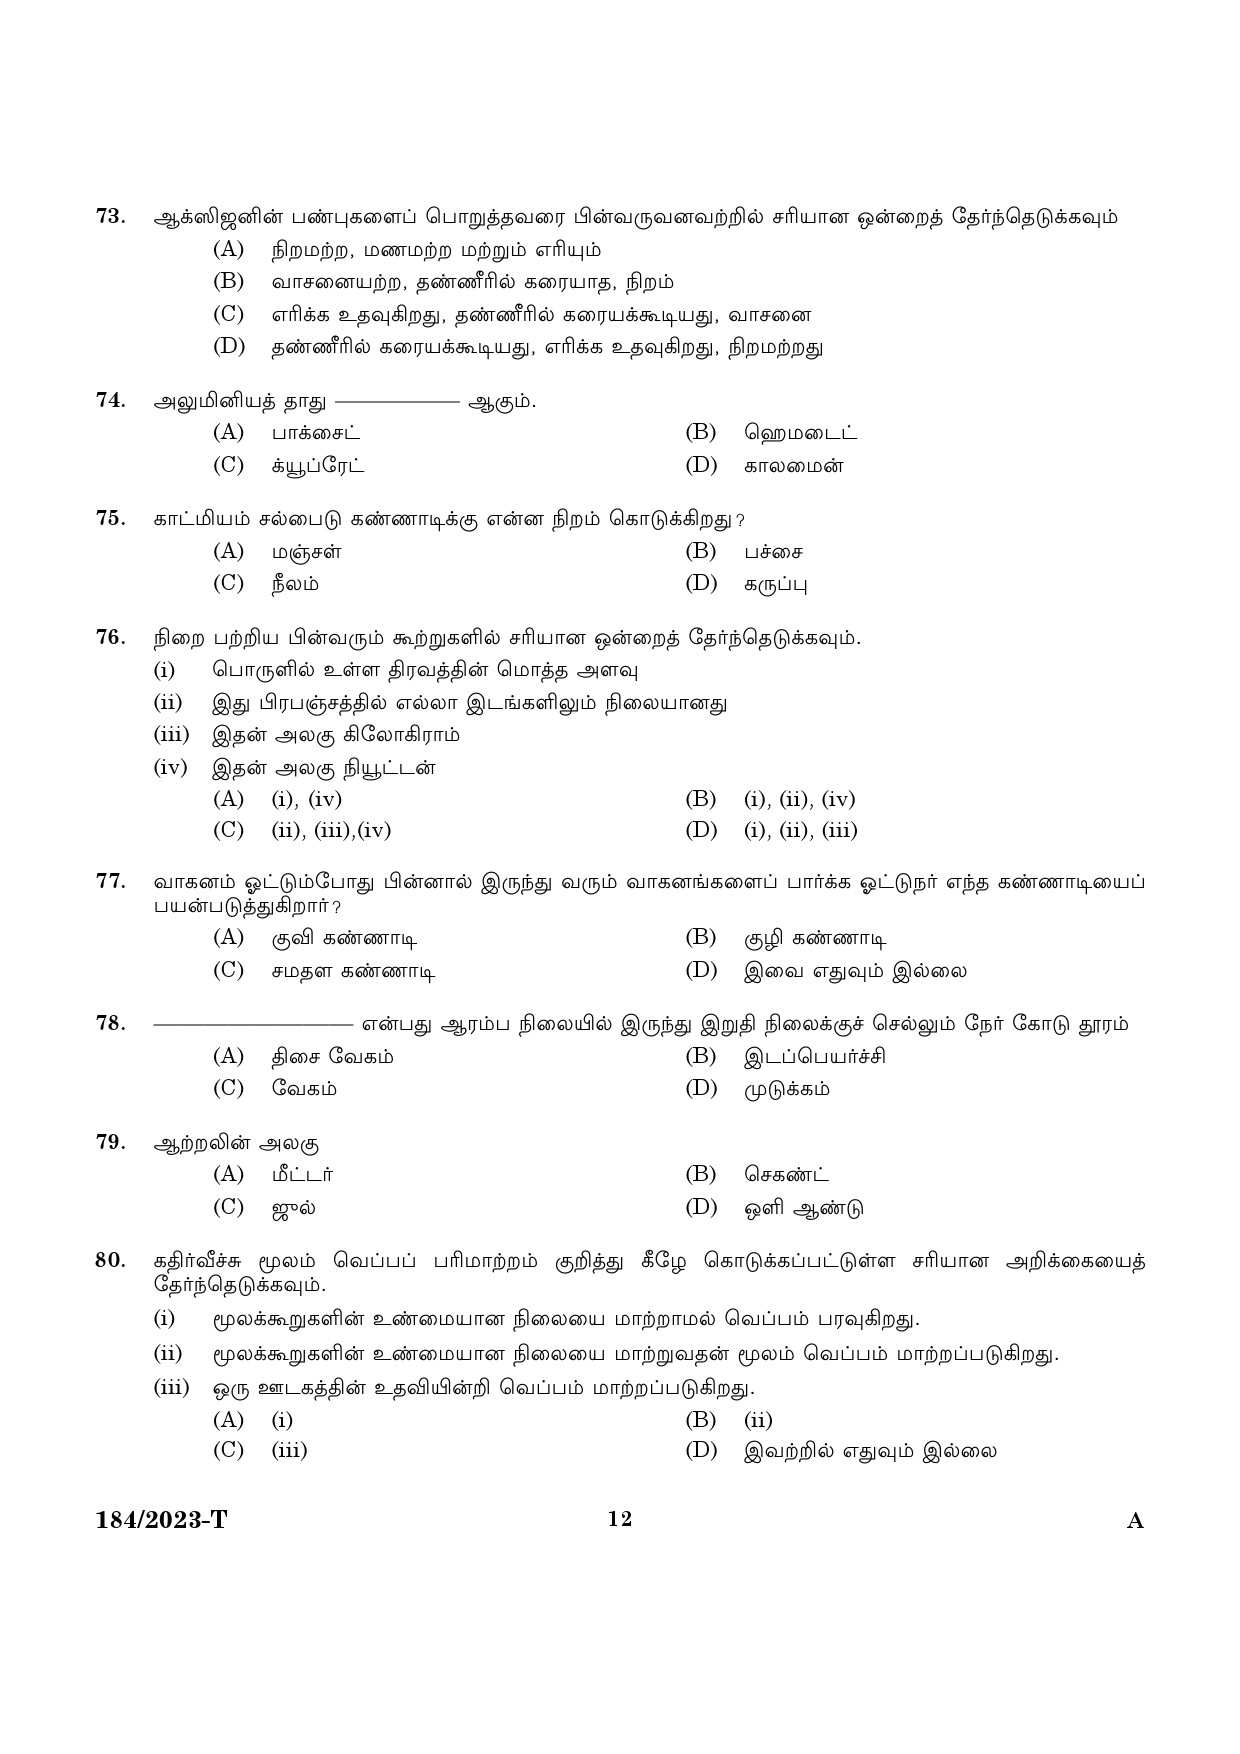 KPSC LGS Tamil Exam 2023 Code 1842023 T 10